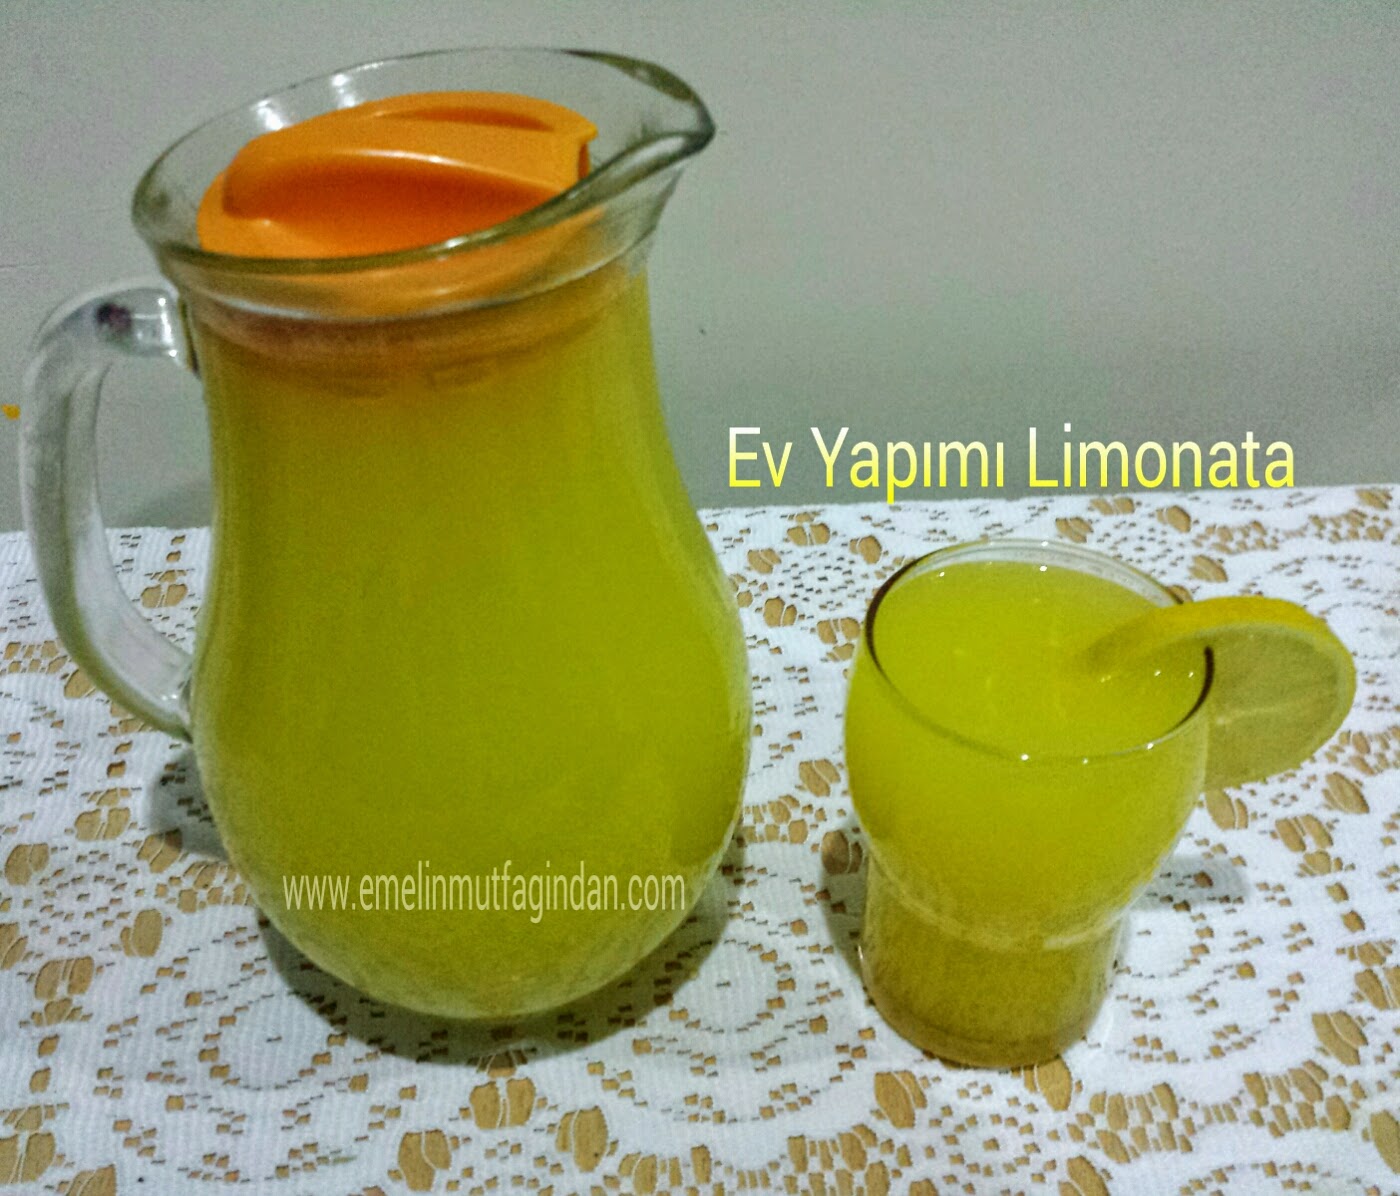 Ev Yapımı Doğal Limonata (1 limon ve 1 Portakaldan)